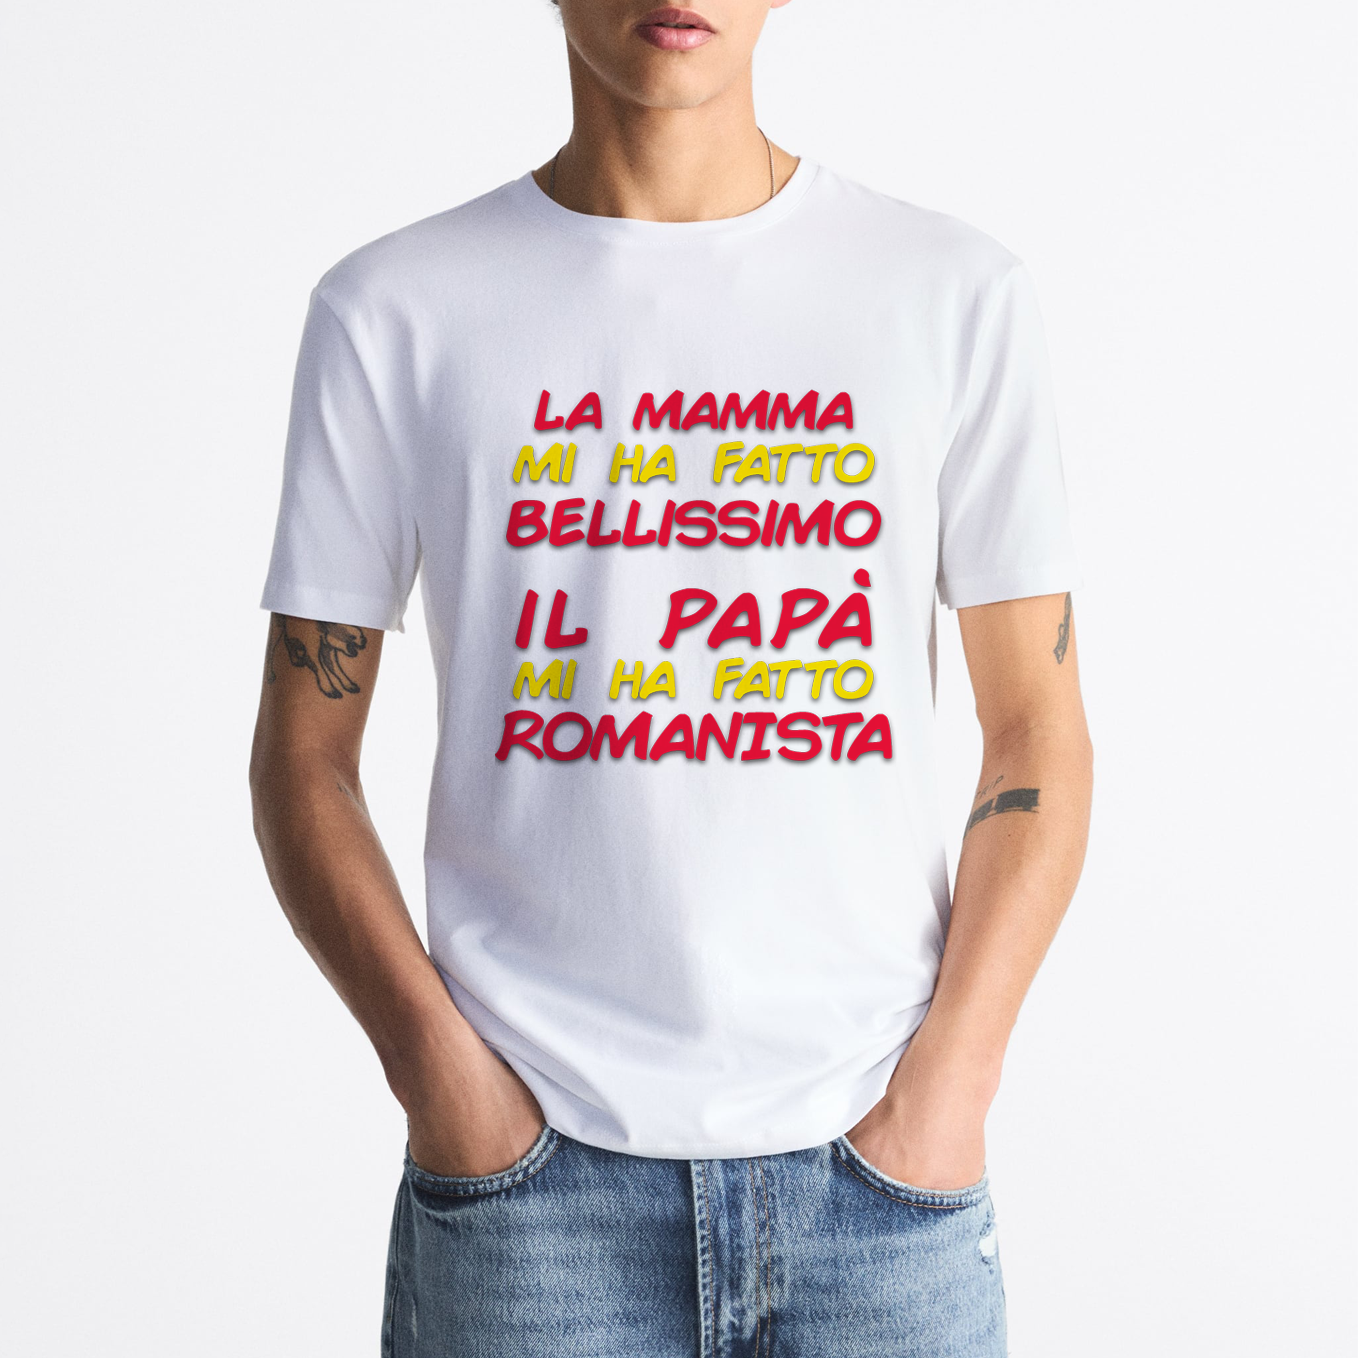 T-shirt "Il papà mi ha fatto Romanista"